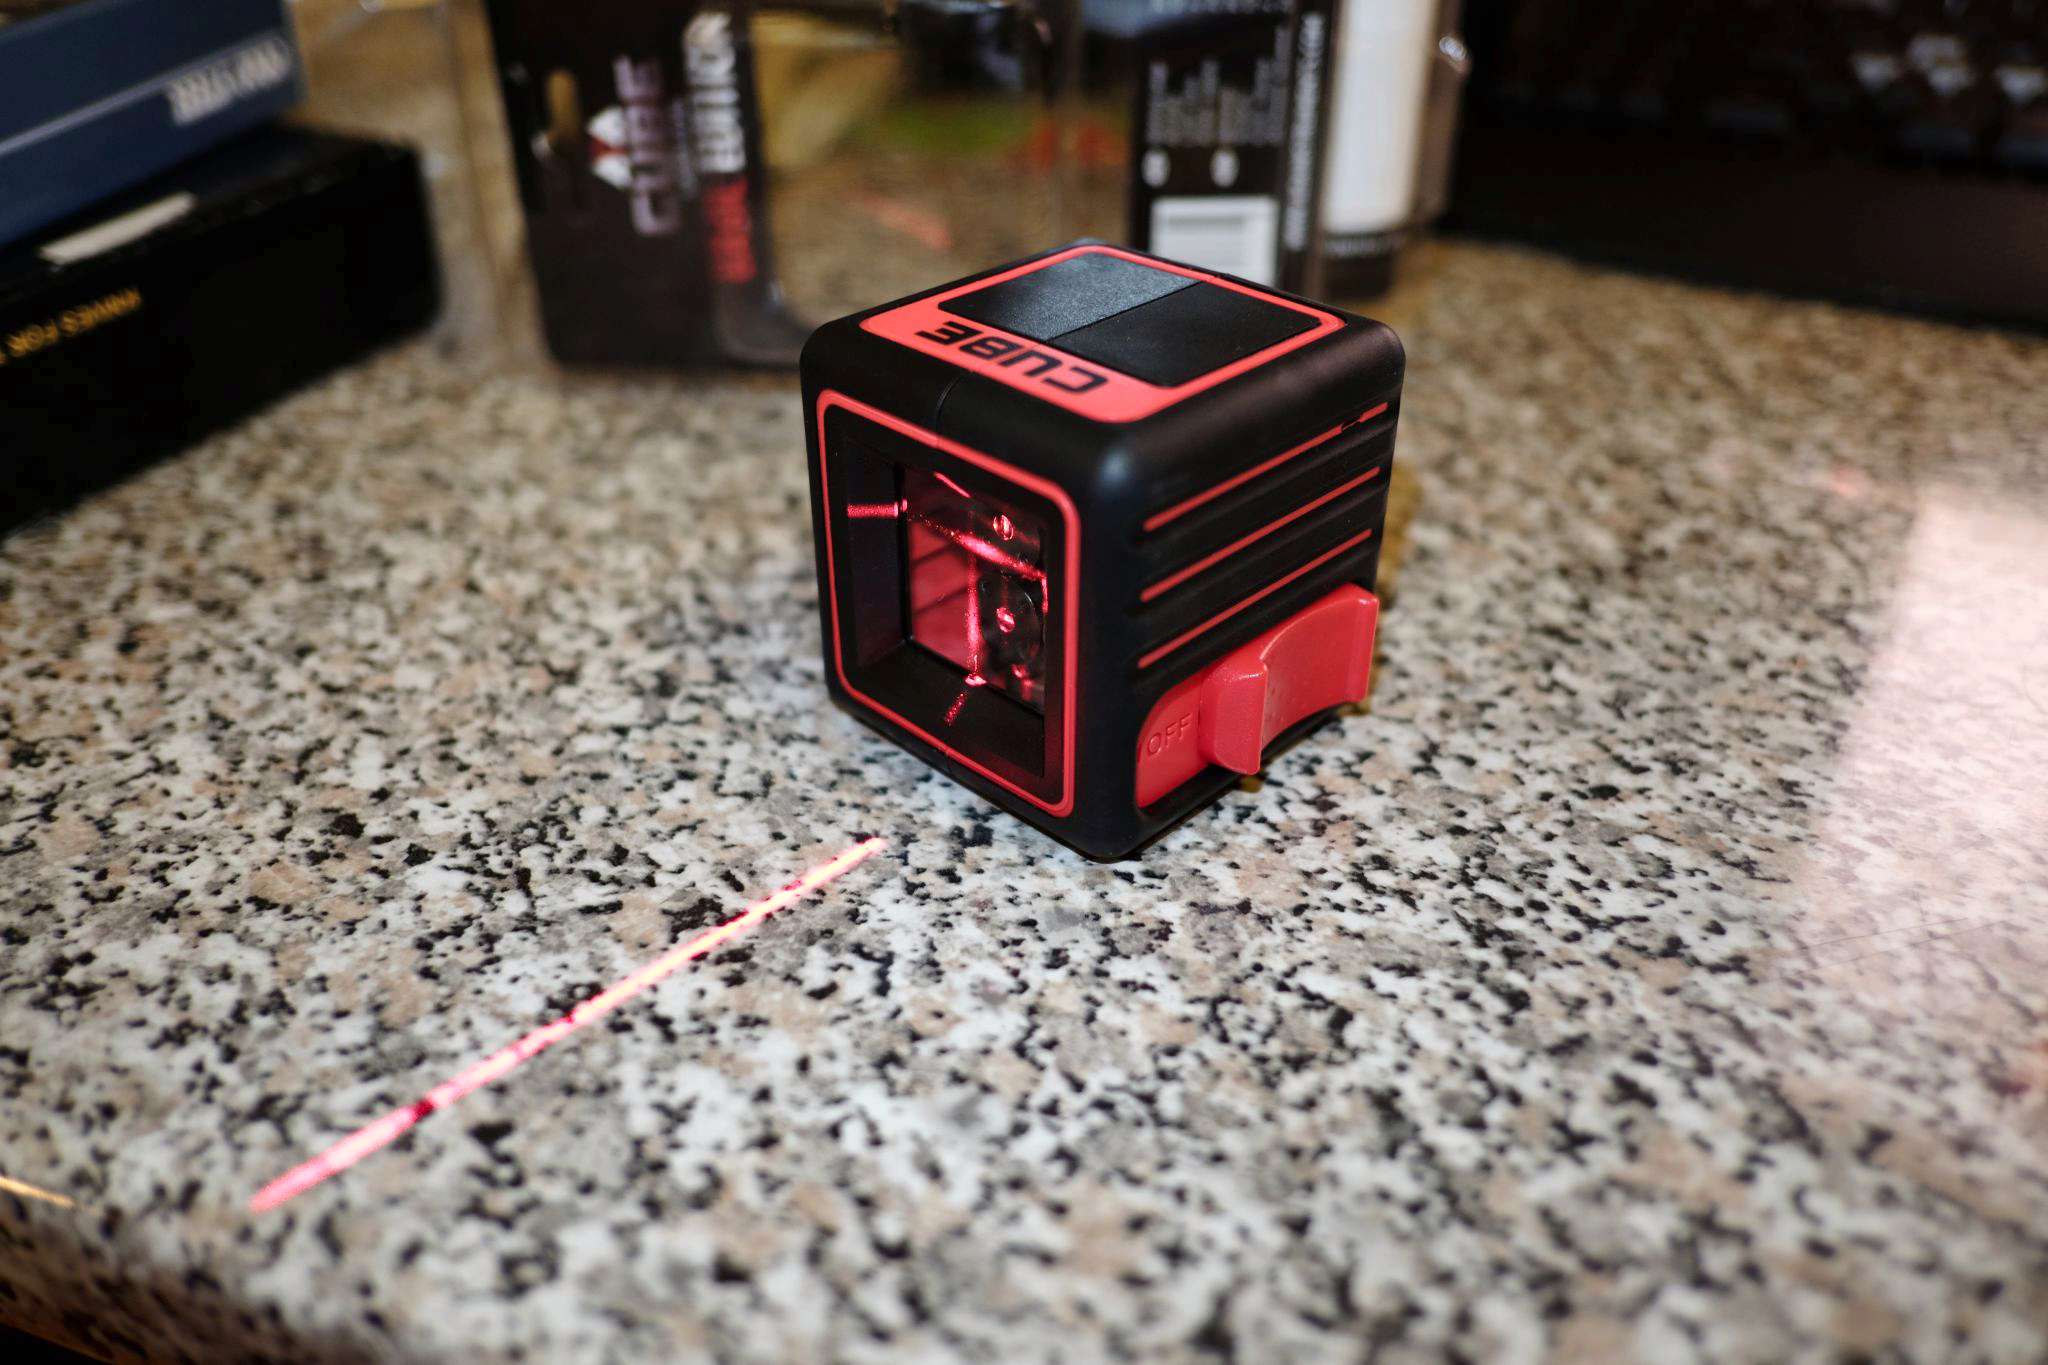 Лазерный уровень cube basic edition